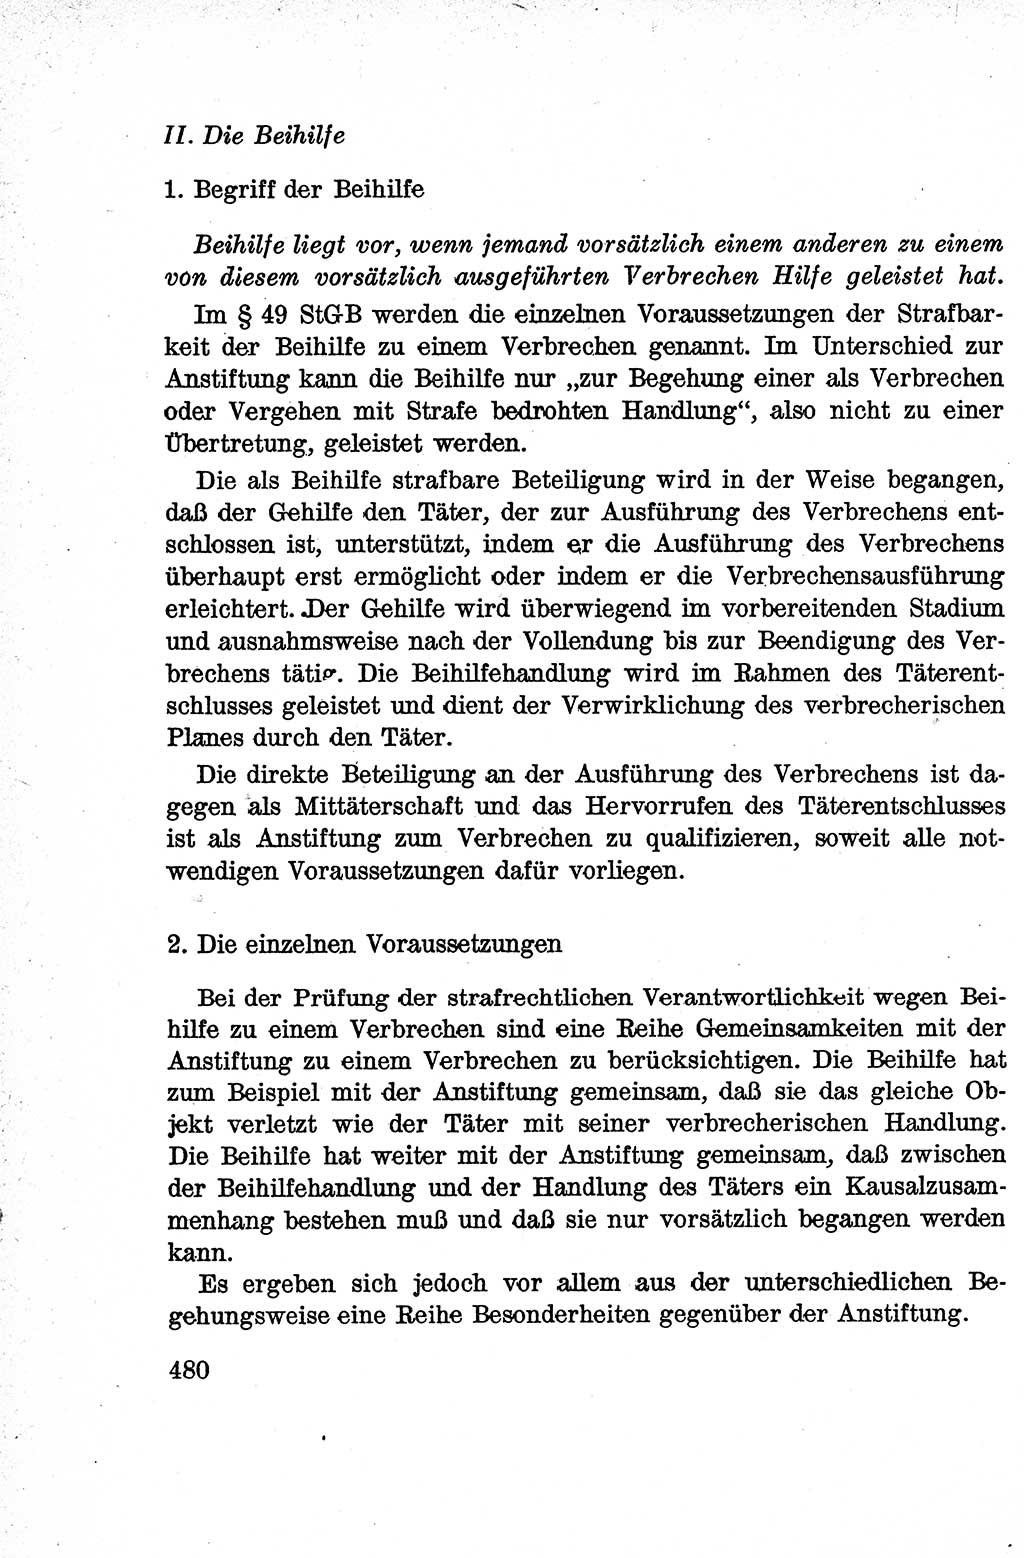 Lehrbuch des Strafrechts der Deutschen Demokratischen Republik (DDR), Allgemeiner Teil 1959, Seite 480 (Lb. Strafr. DDR AT 1959, S. 480)